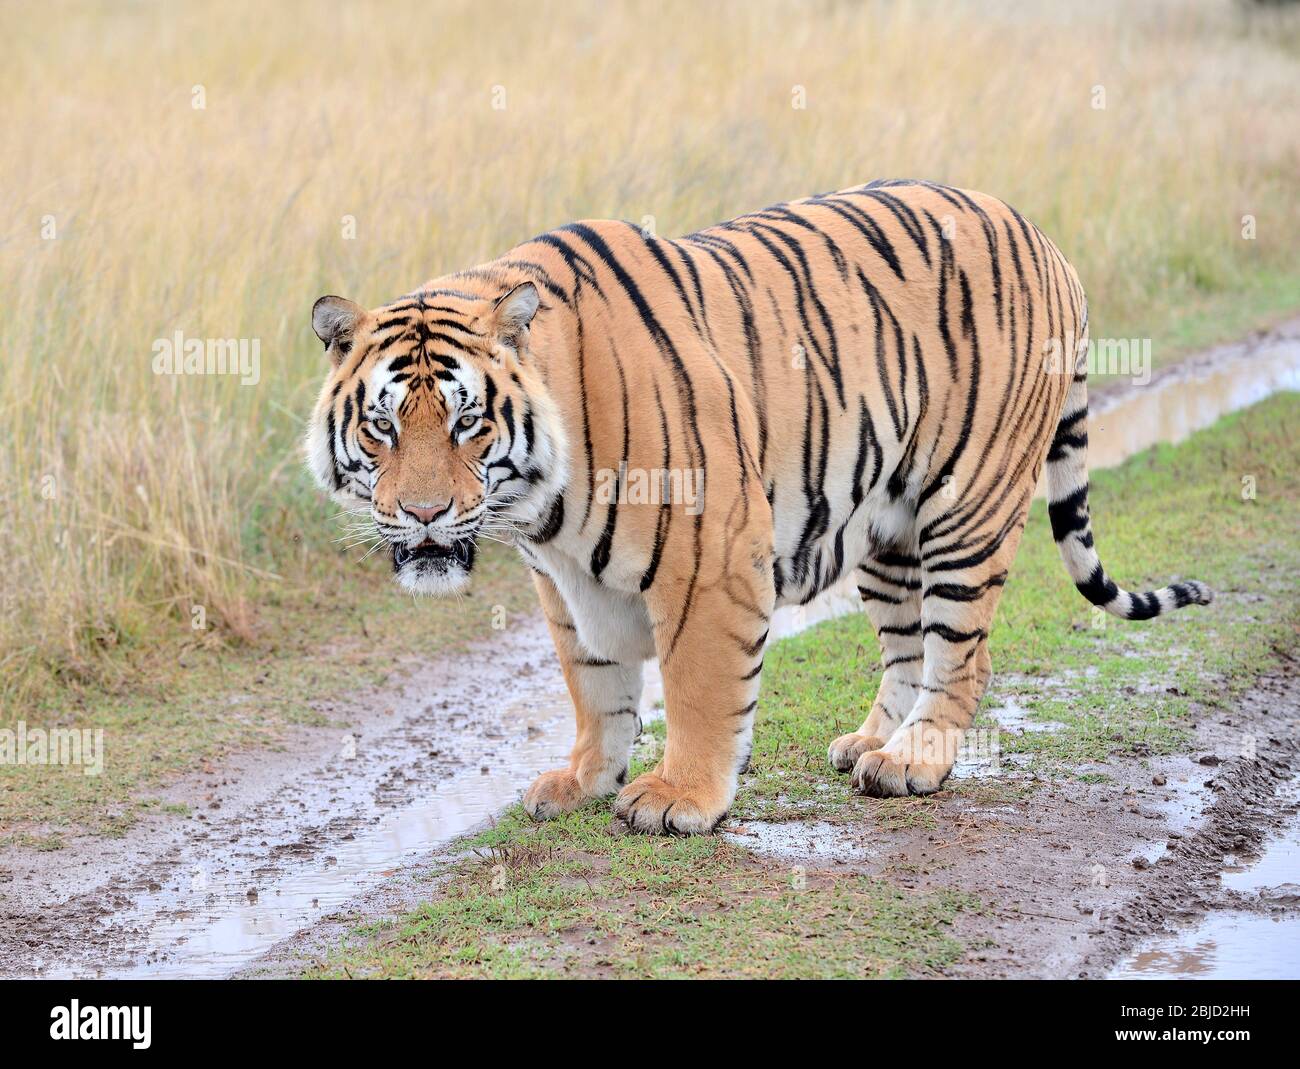 John Varty züchtet bengalische Tiger in Afrika. Sie wandern frei herum und jagen ihr eigenes Essen. Großer Erfolg bei der Erhaltung. Touristenziel. Stockfoto